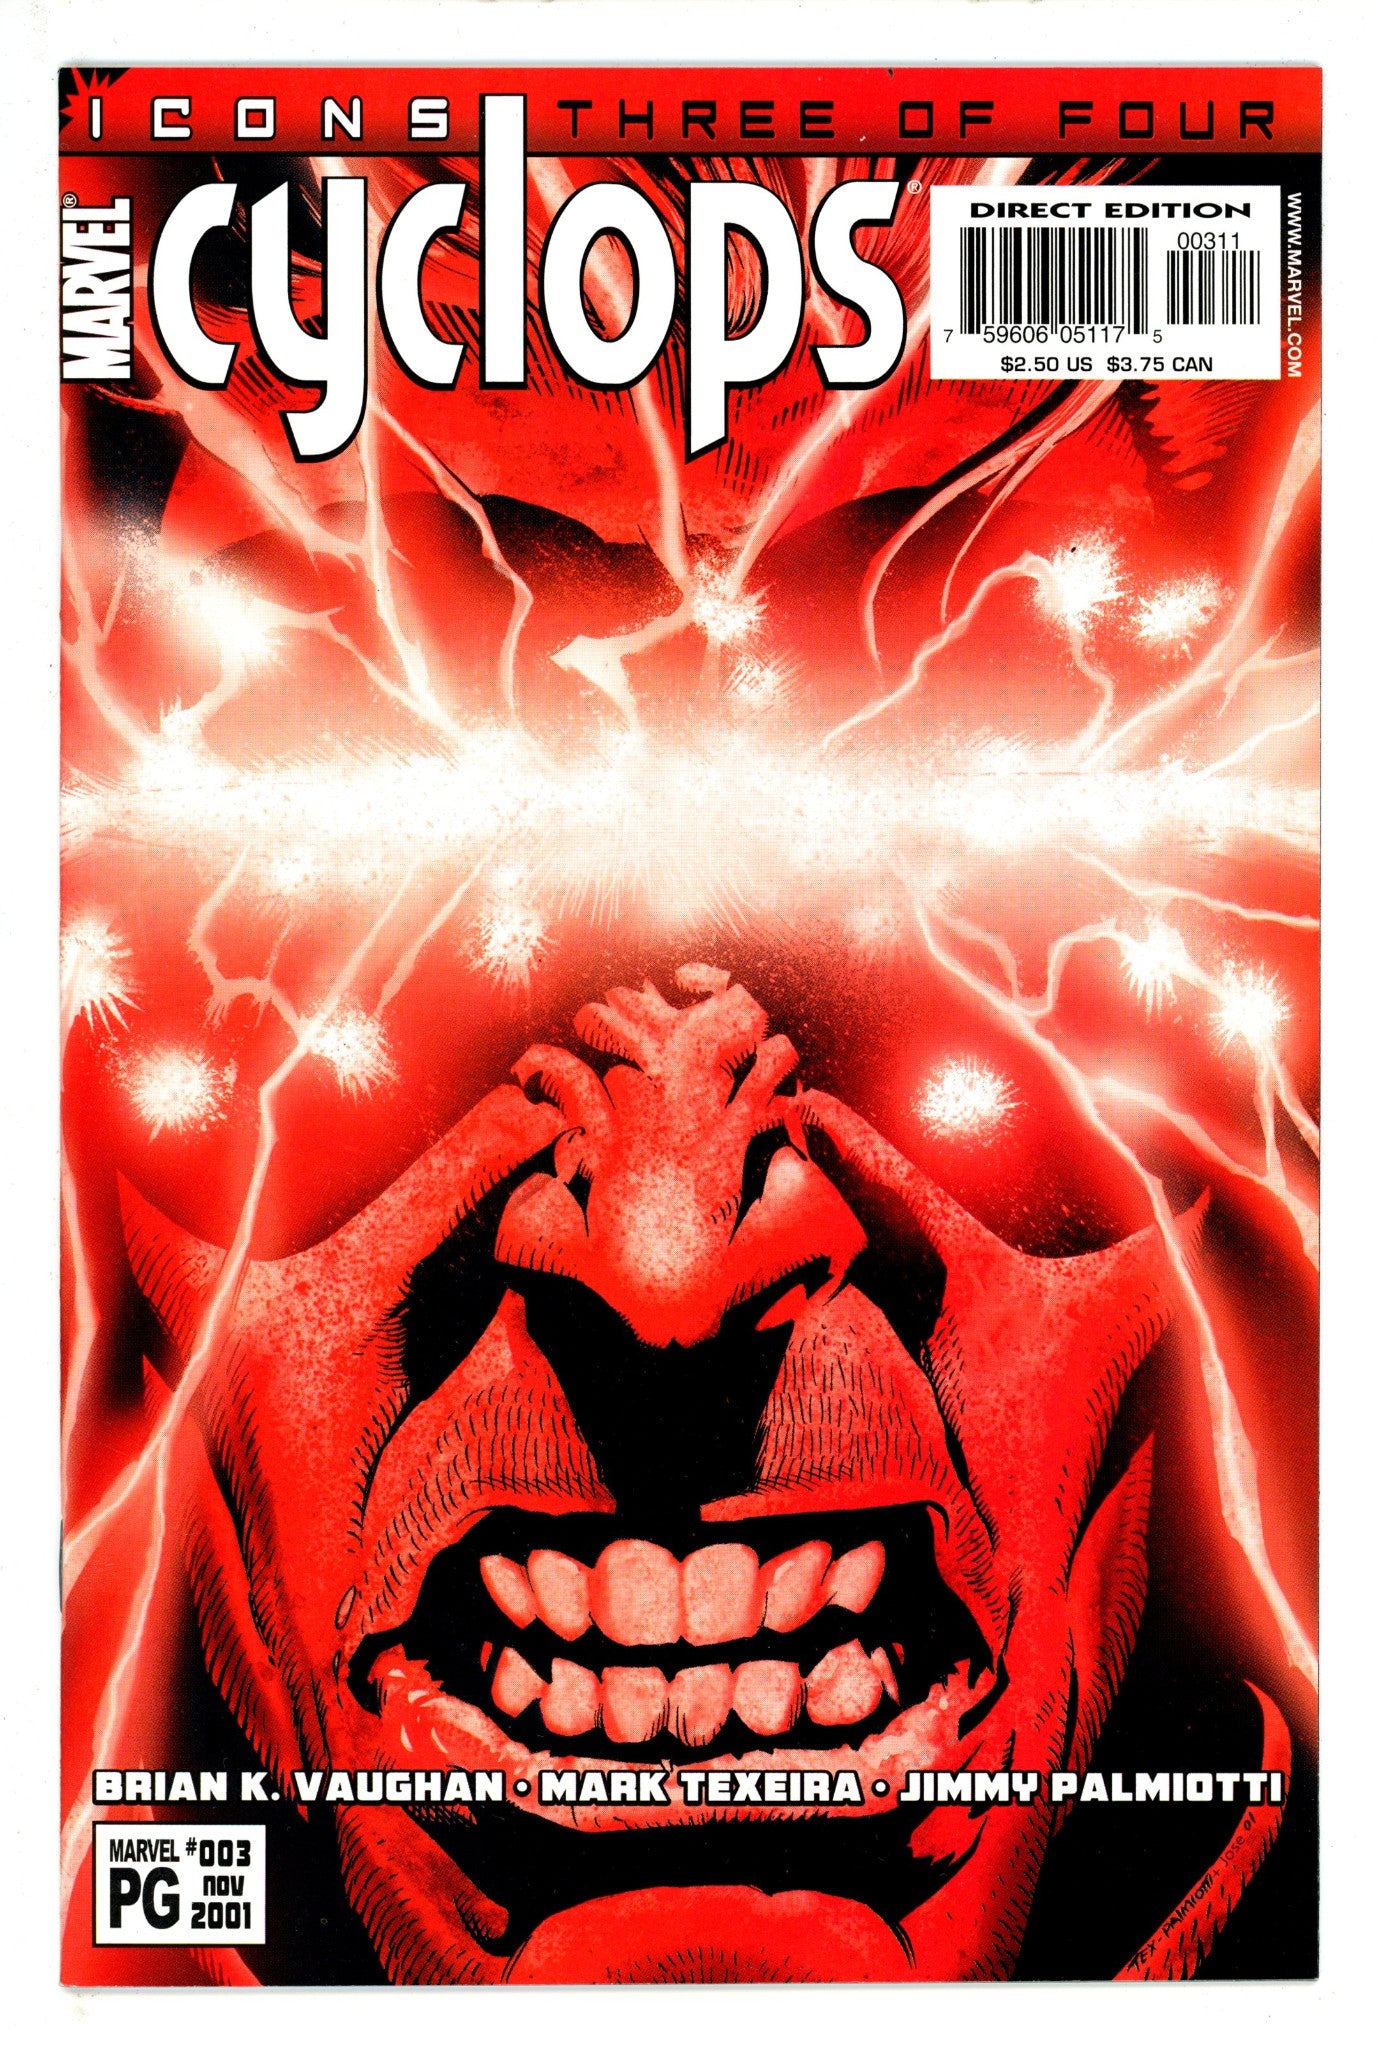 Cyclops Vol 1 3 (2001)